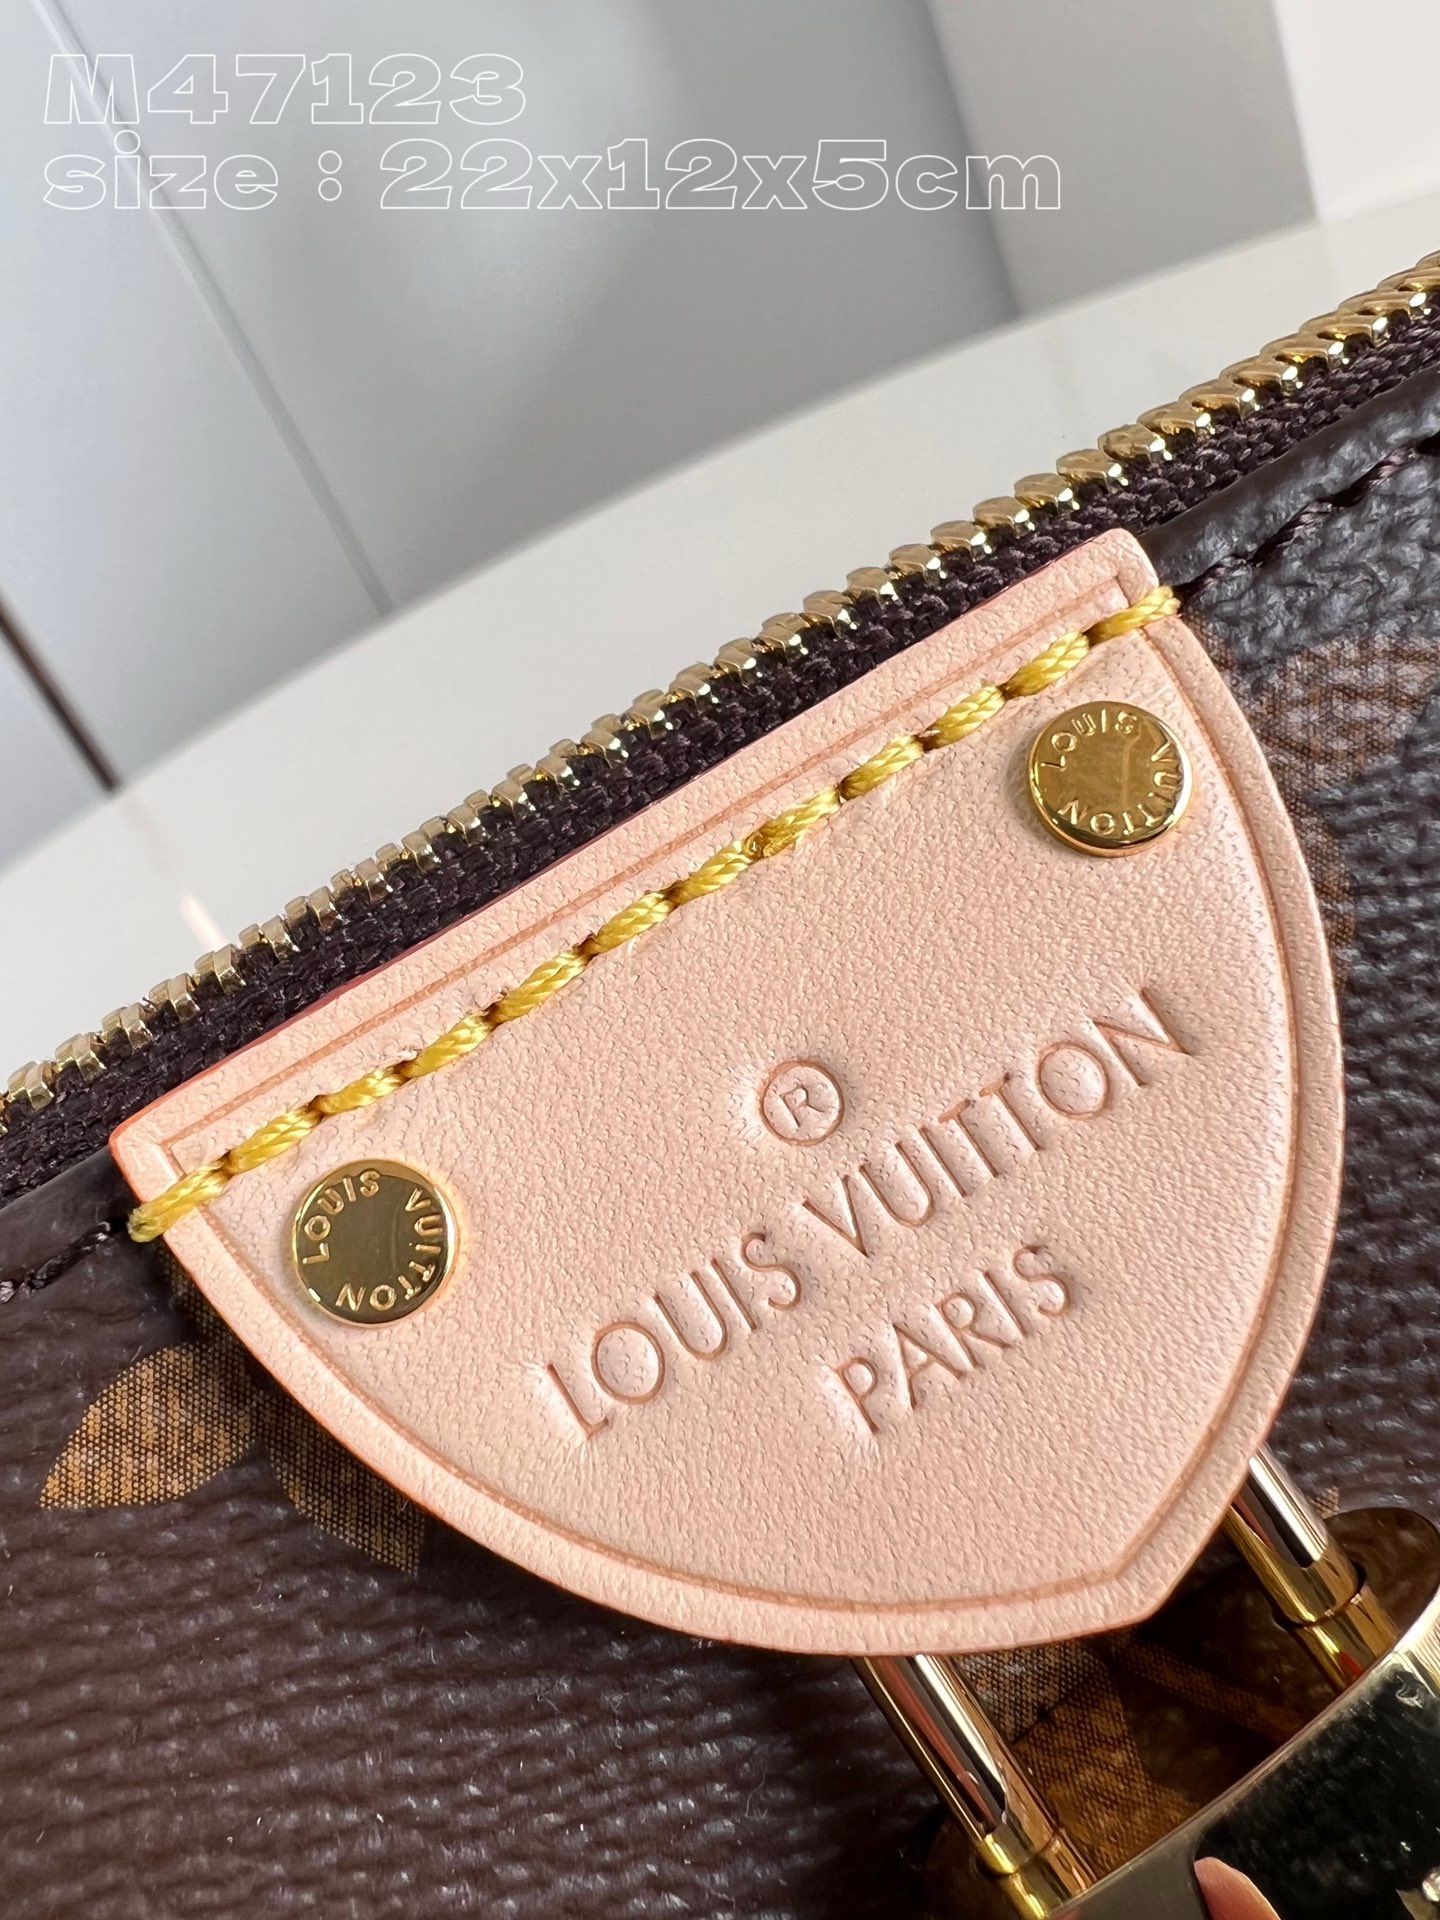 Louis Vuitton Pochette Tirette M47123